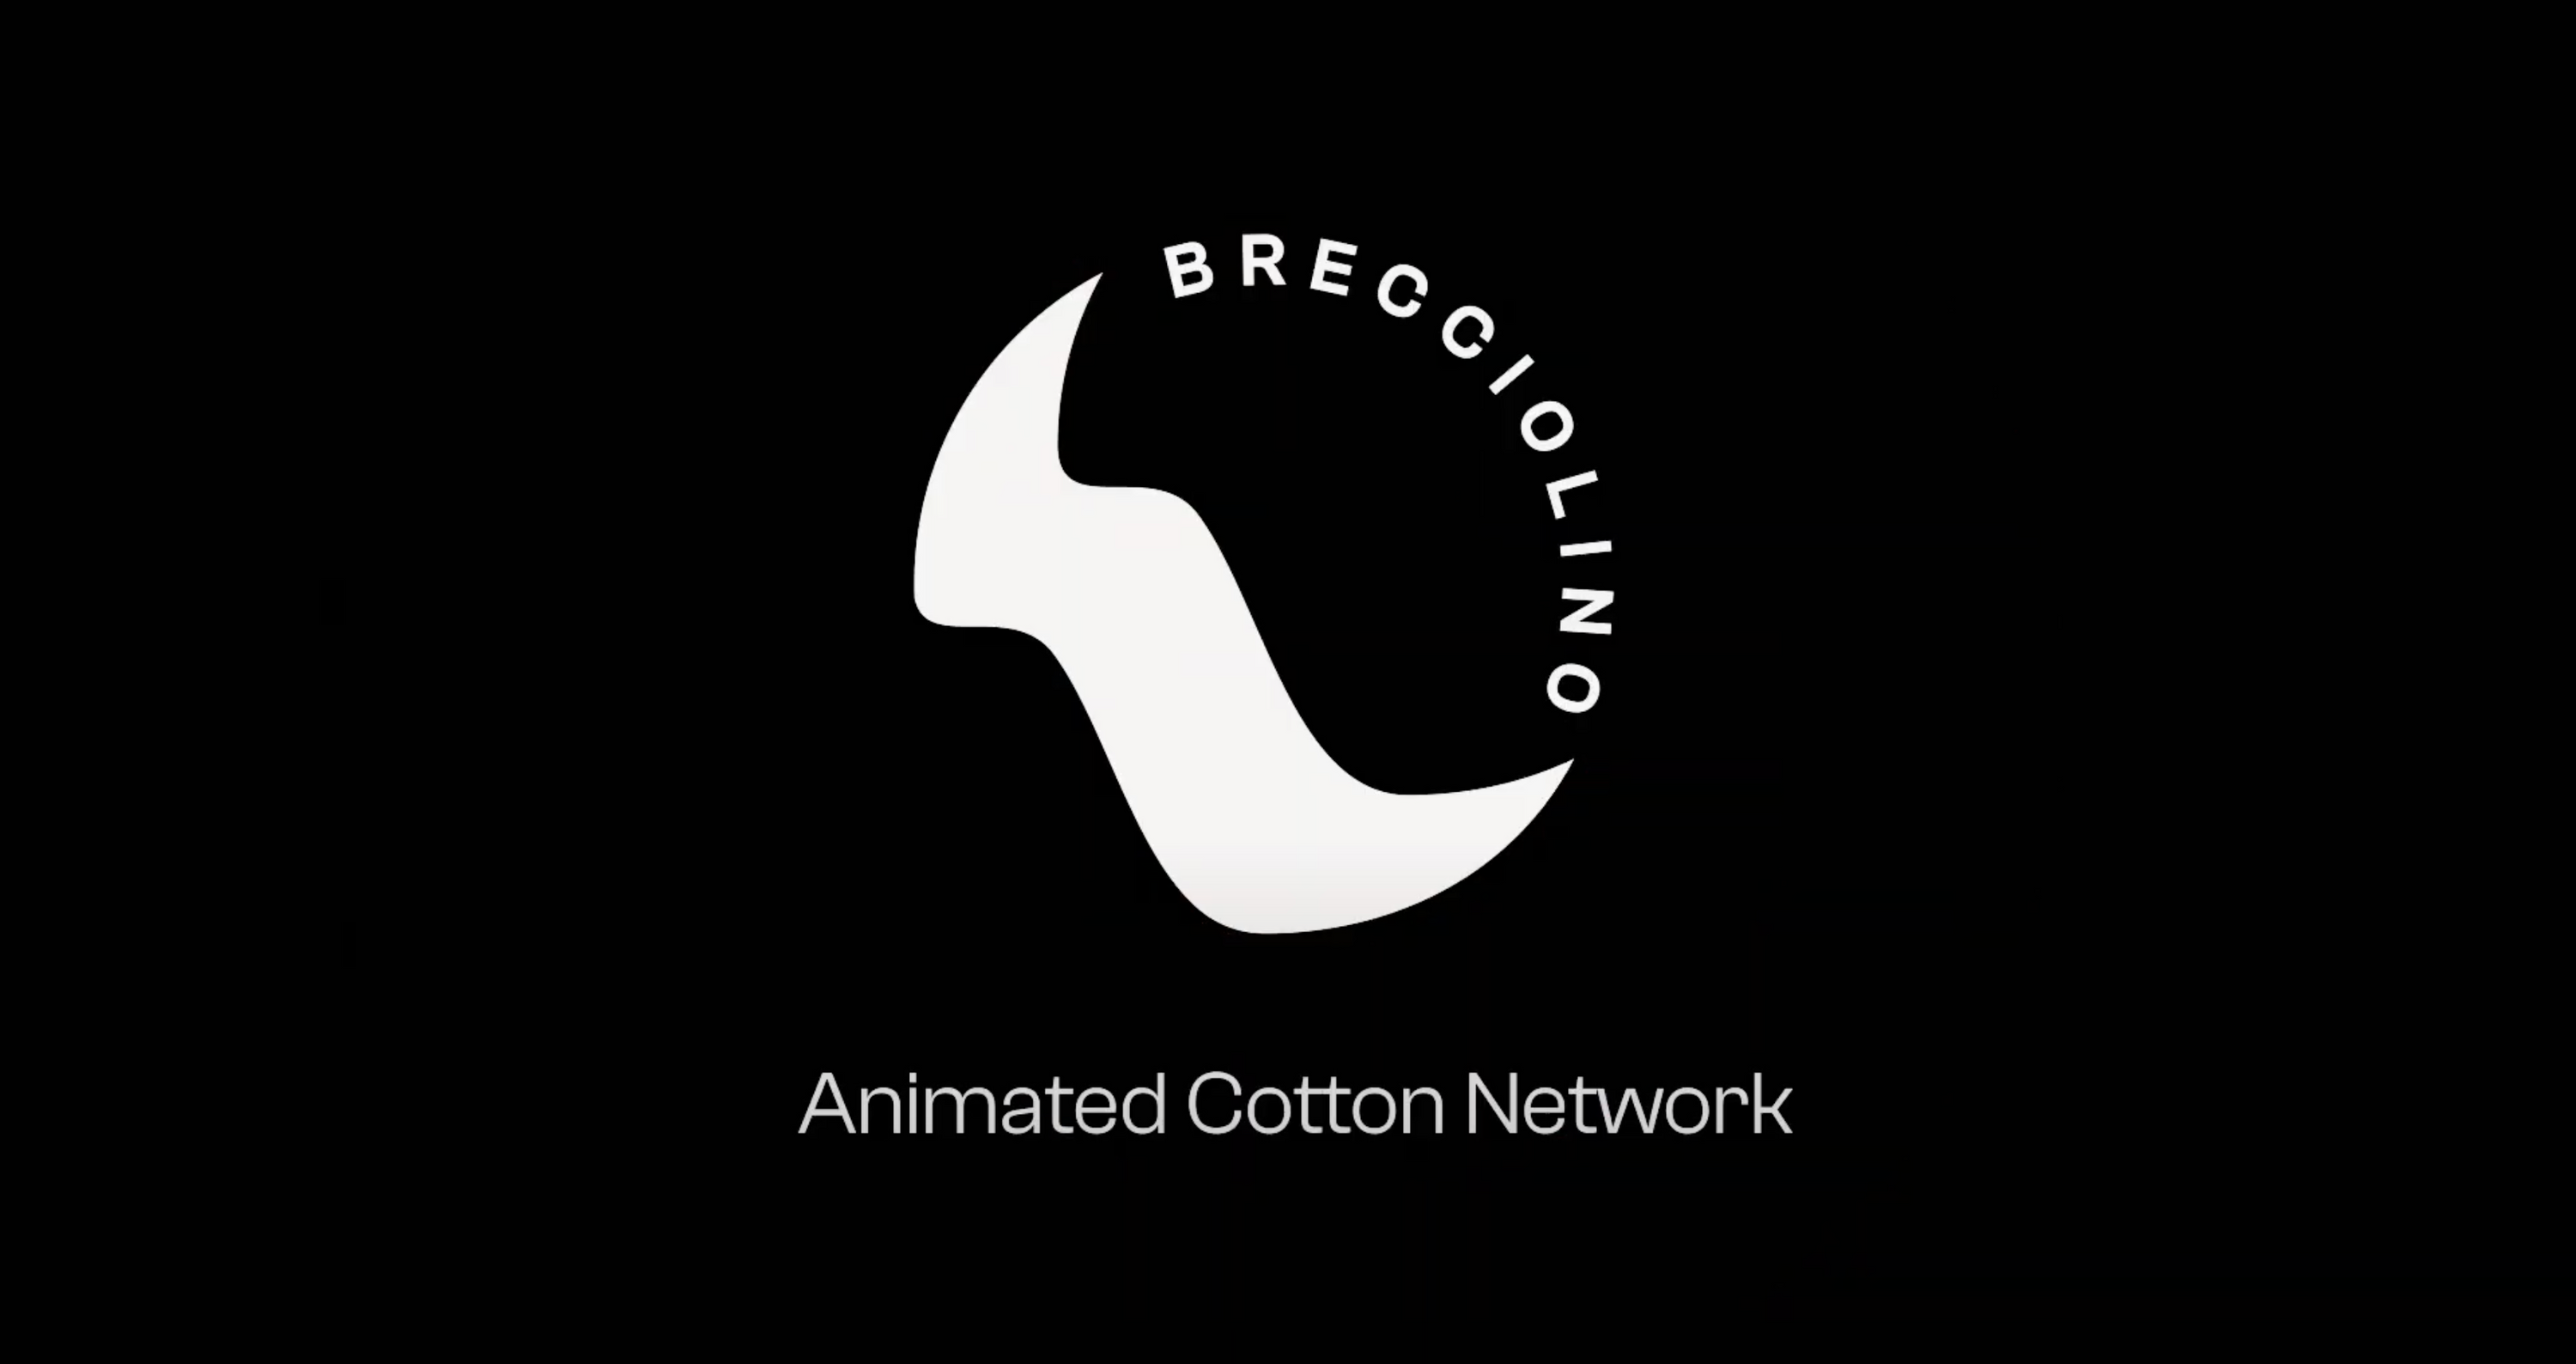 Video presentazione di Brecciolino: chi siamo, illustrazione del funzionamento e del processo produttivo